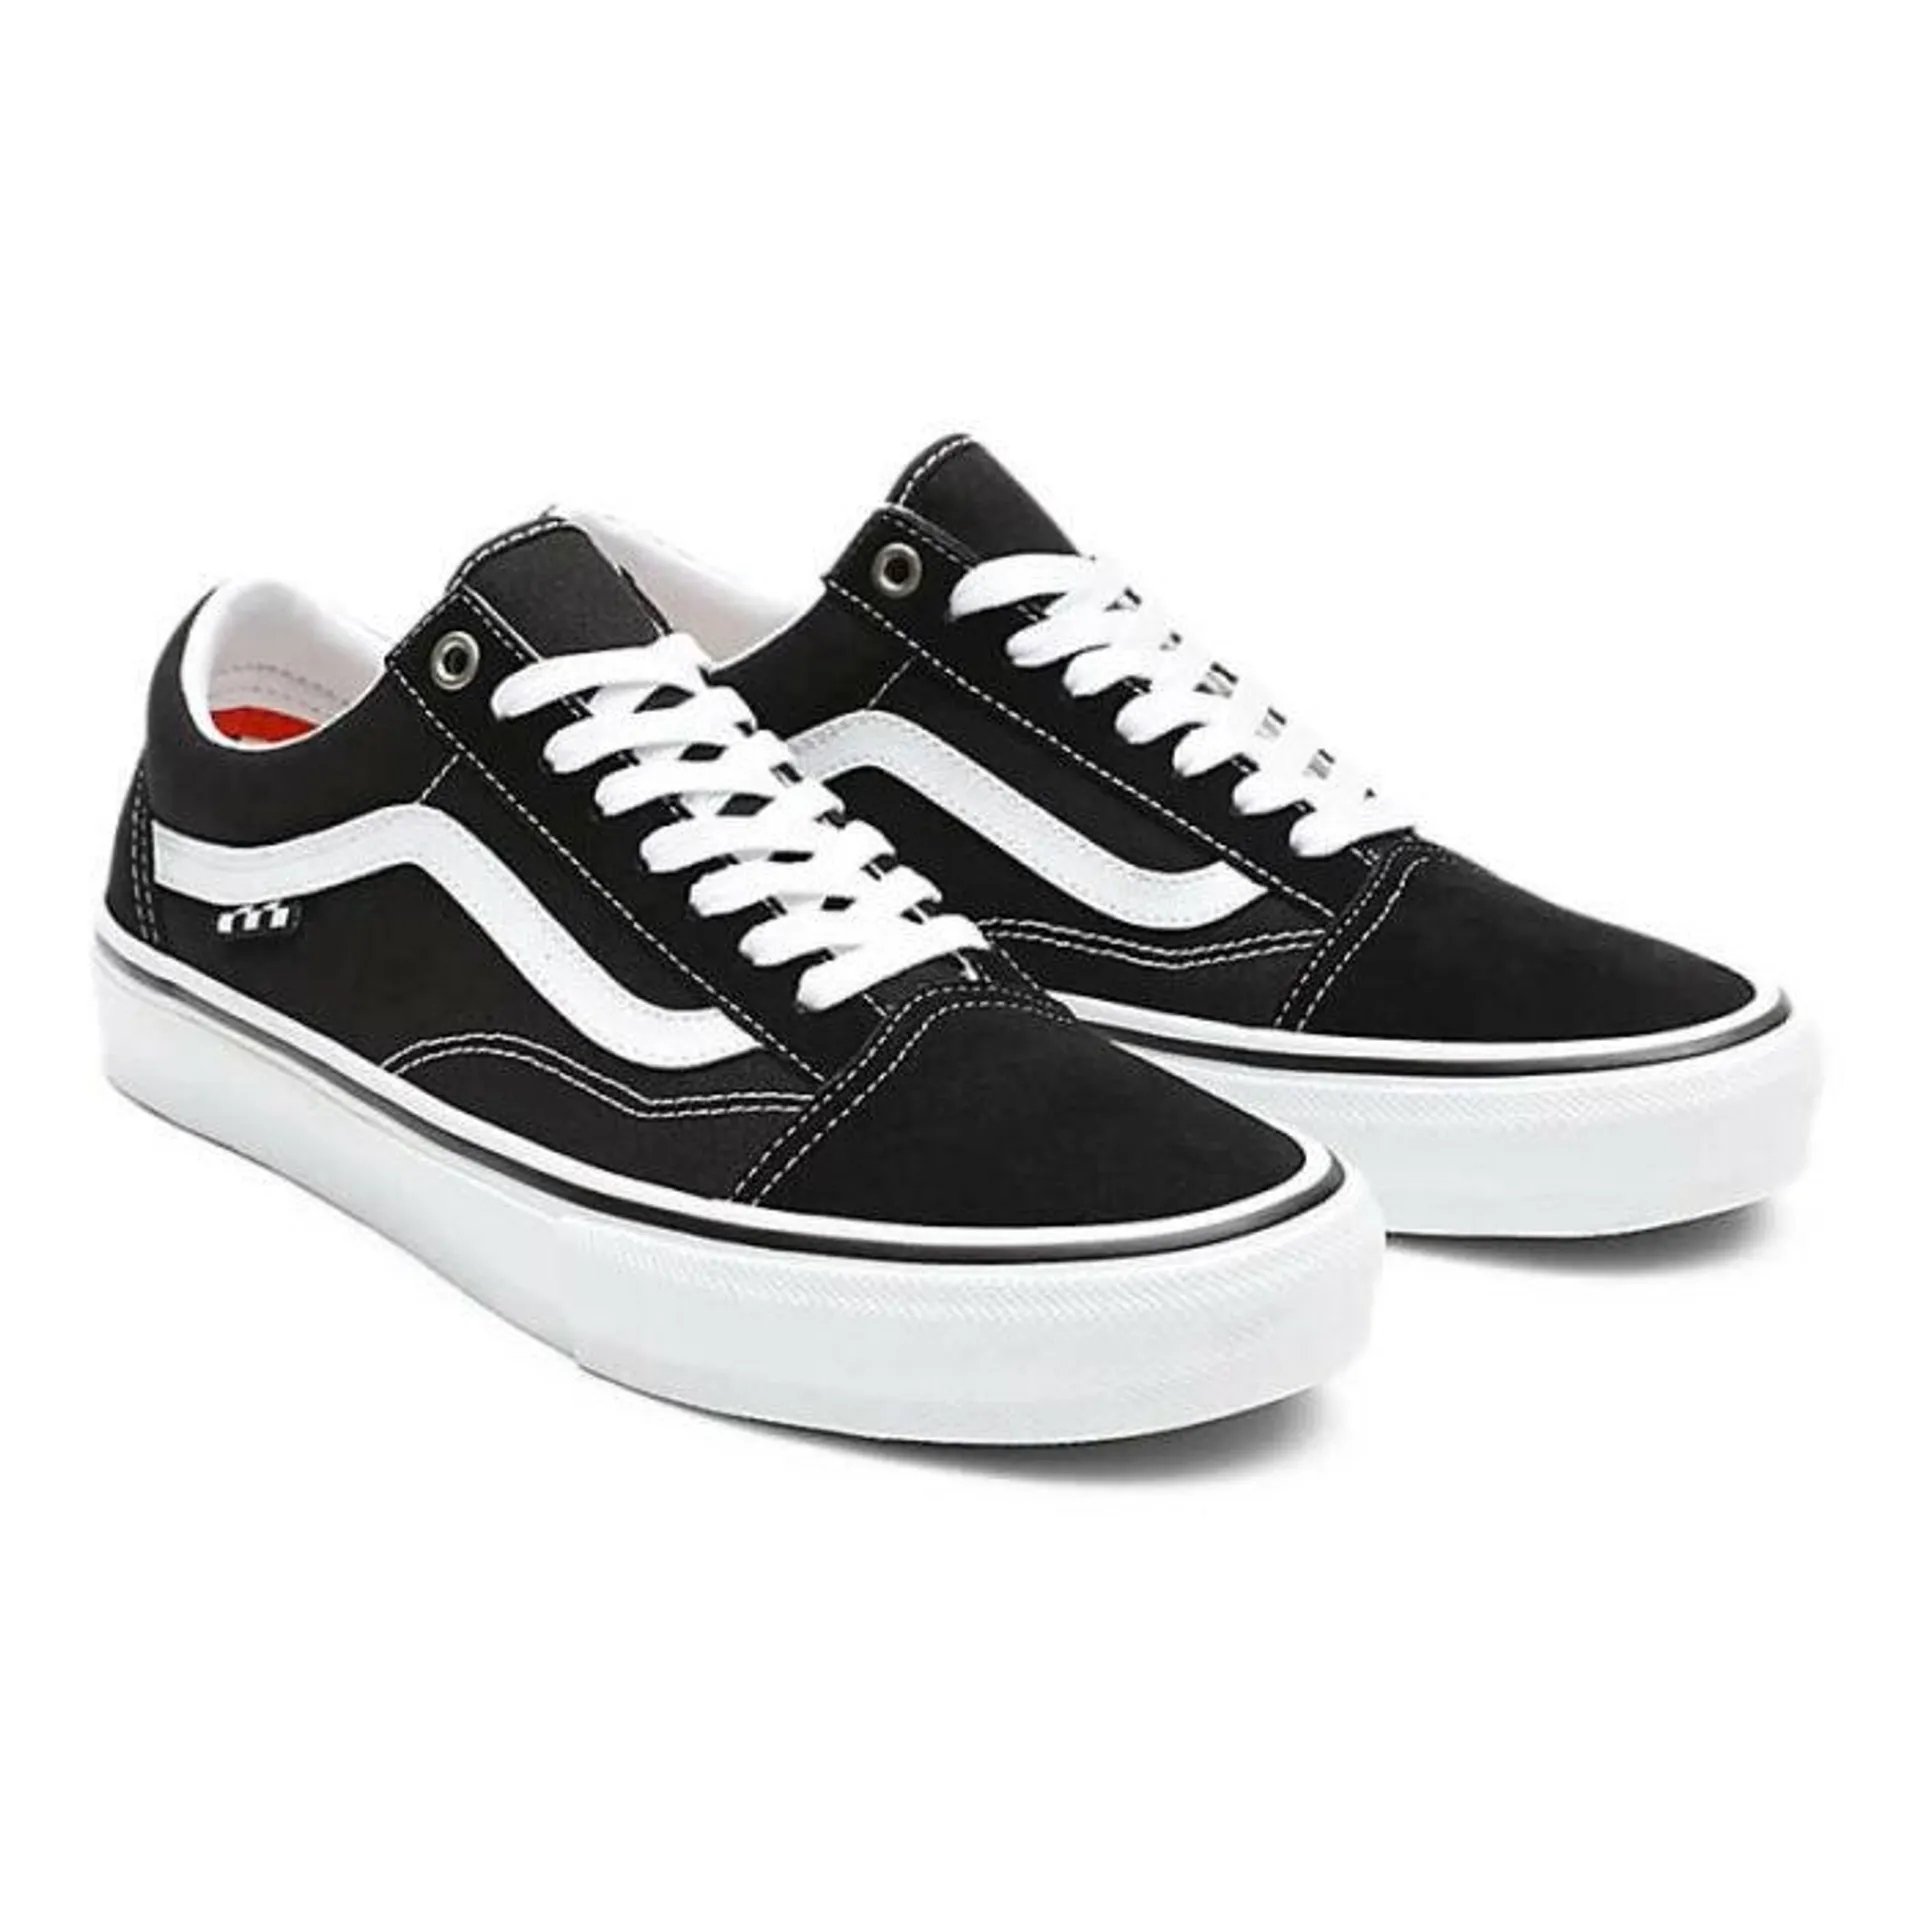 Zapatos Vans Skate Old Skool Black White